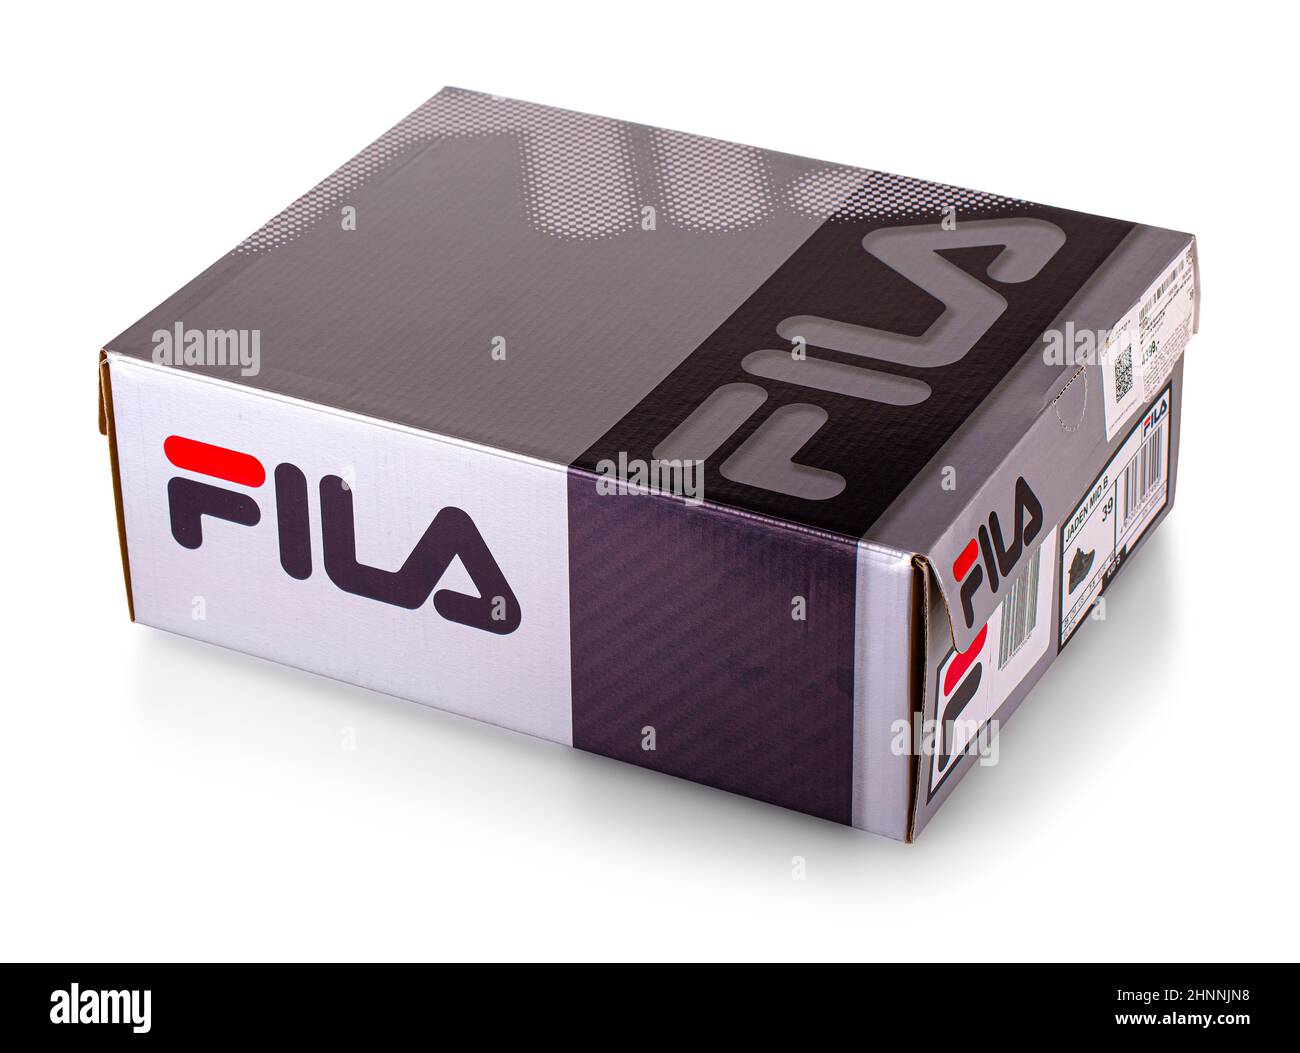 Caja de zapatos Fila Aislada sobre fondo blanco, Fila es una de las marcas  más famosas del mundo Fotografía de stock - Alamy